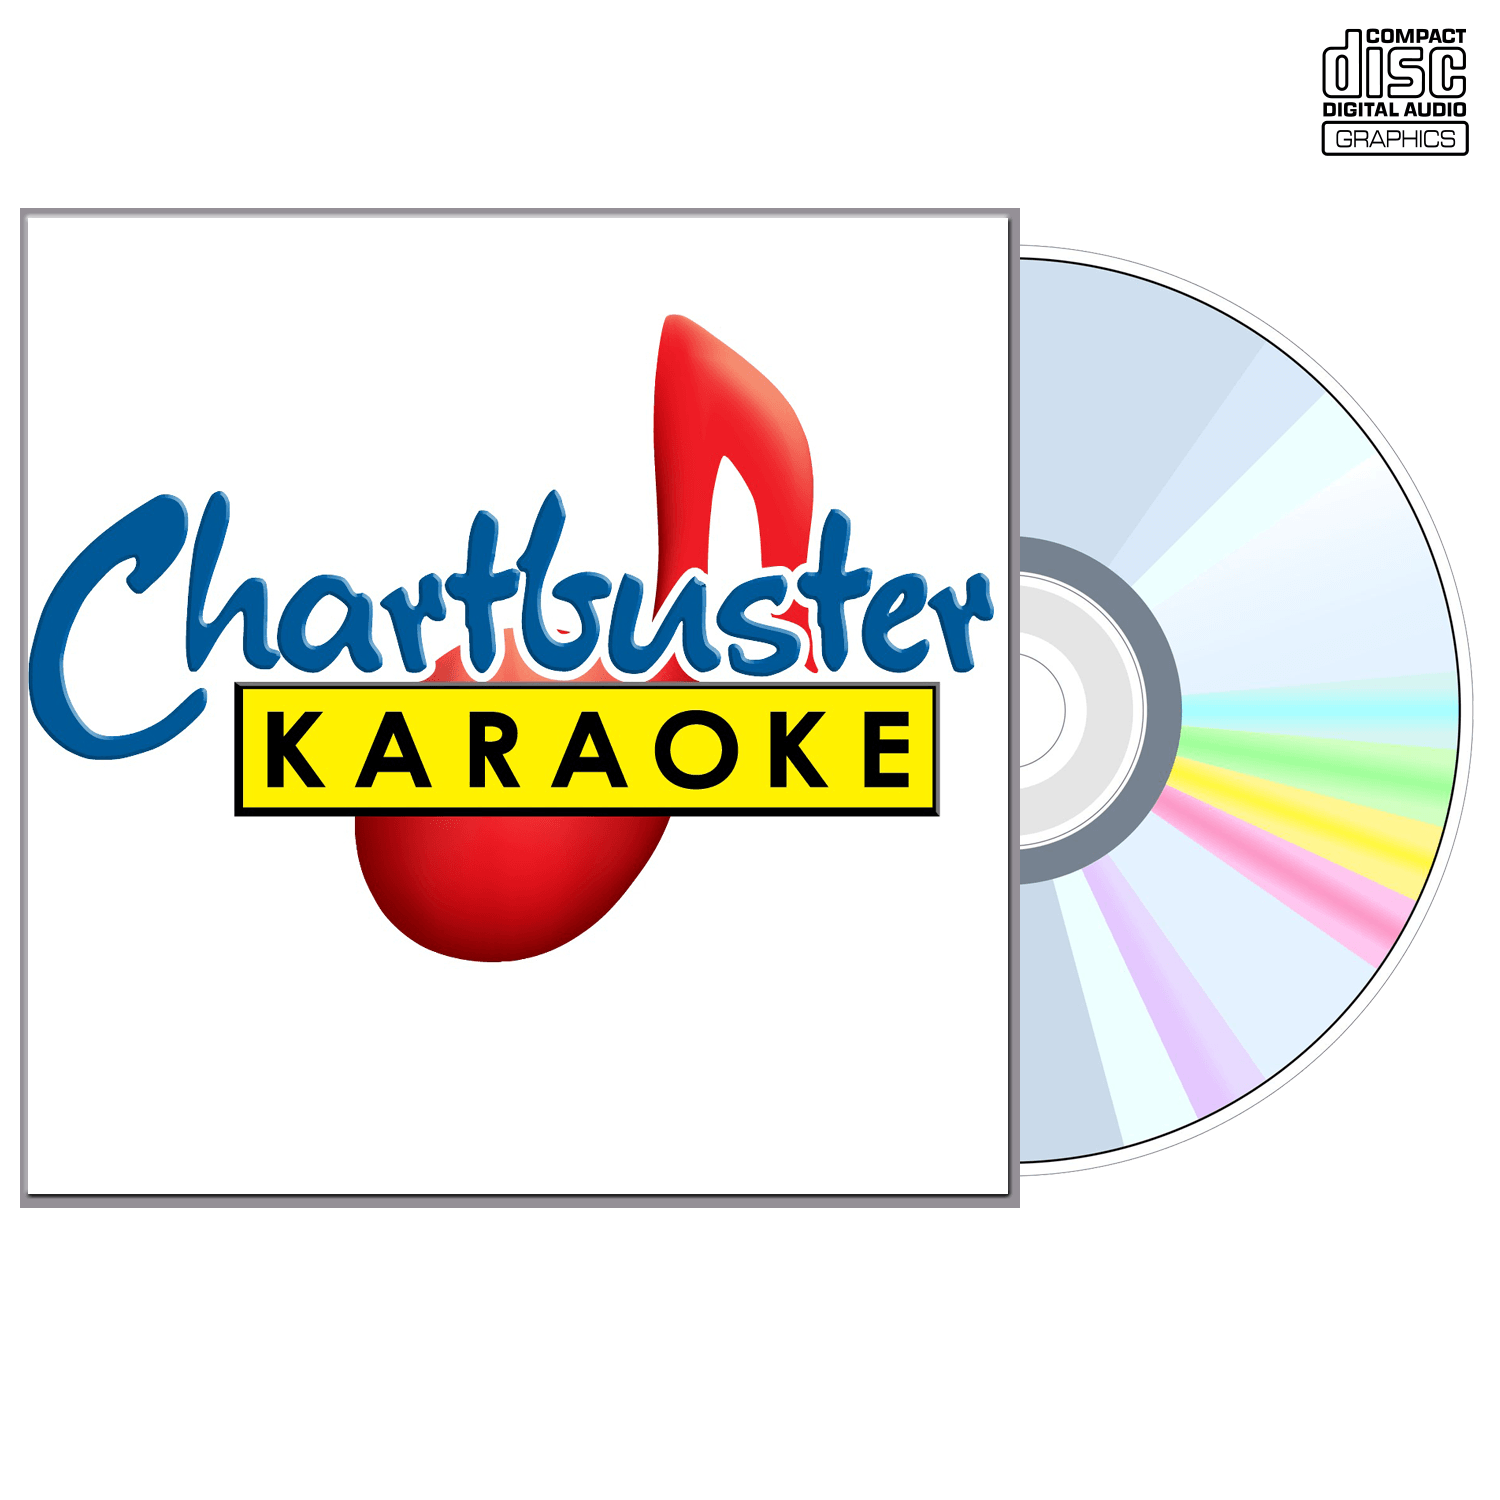 Amy Grant Vol 2 - CD+G - Chartbuster Karaoke - Karaoke Home Entertainment